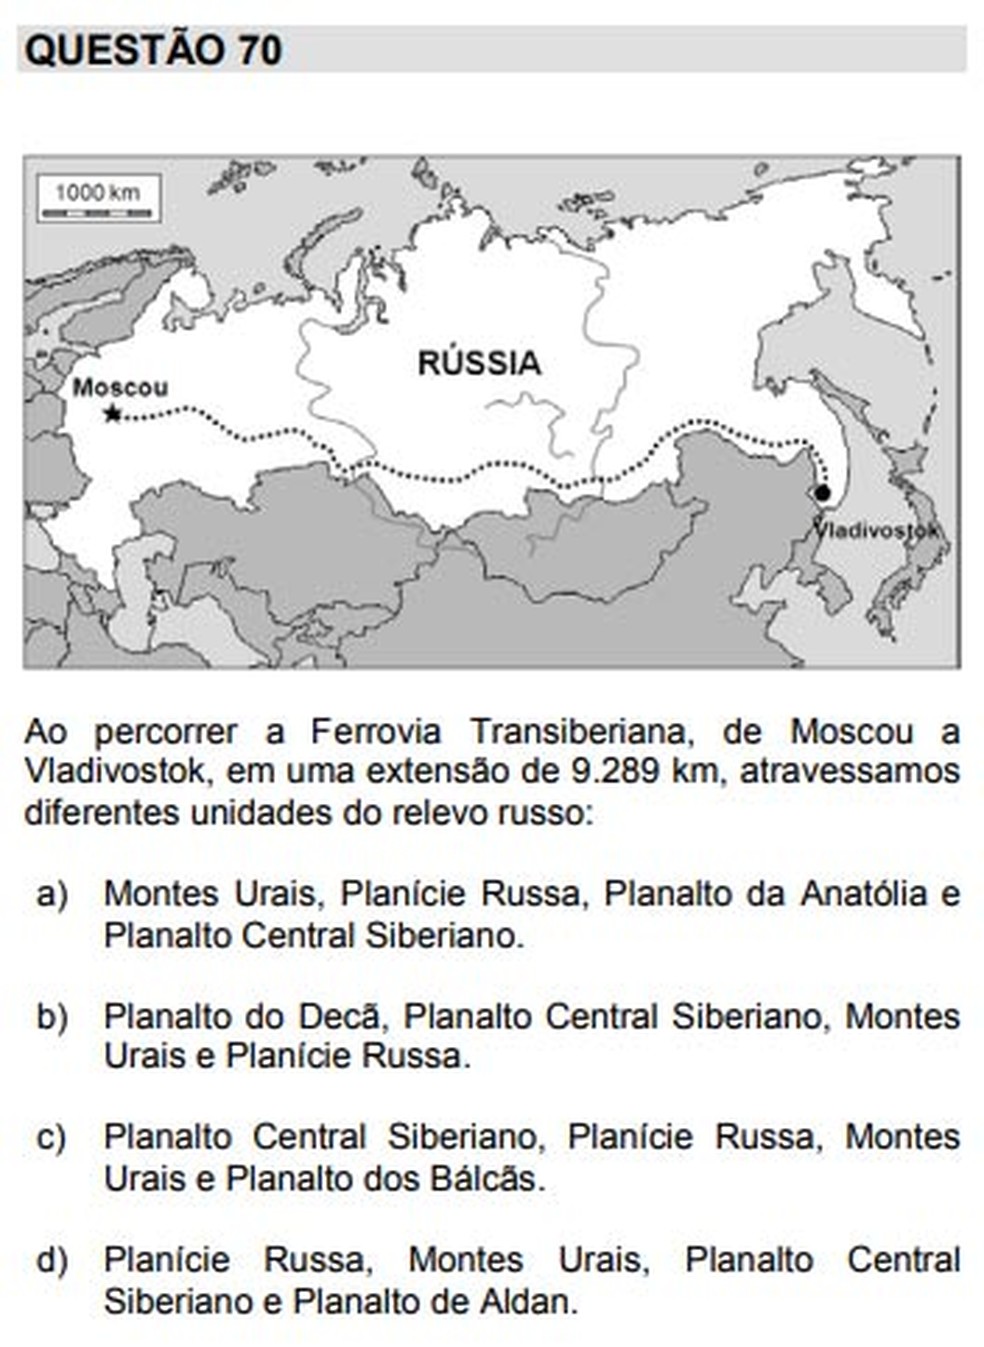 Questão do vestibular da Unicamp 2018 pediu aos candidatos conhecimentos sobre a geografia da Rússia (Foto: Reprodução/Unicamp)